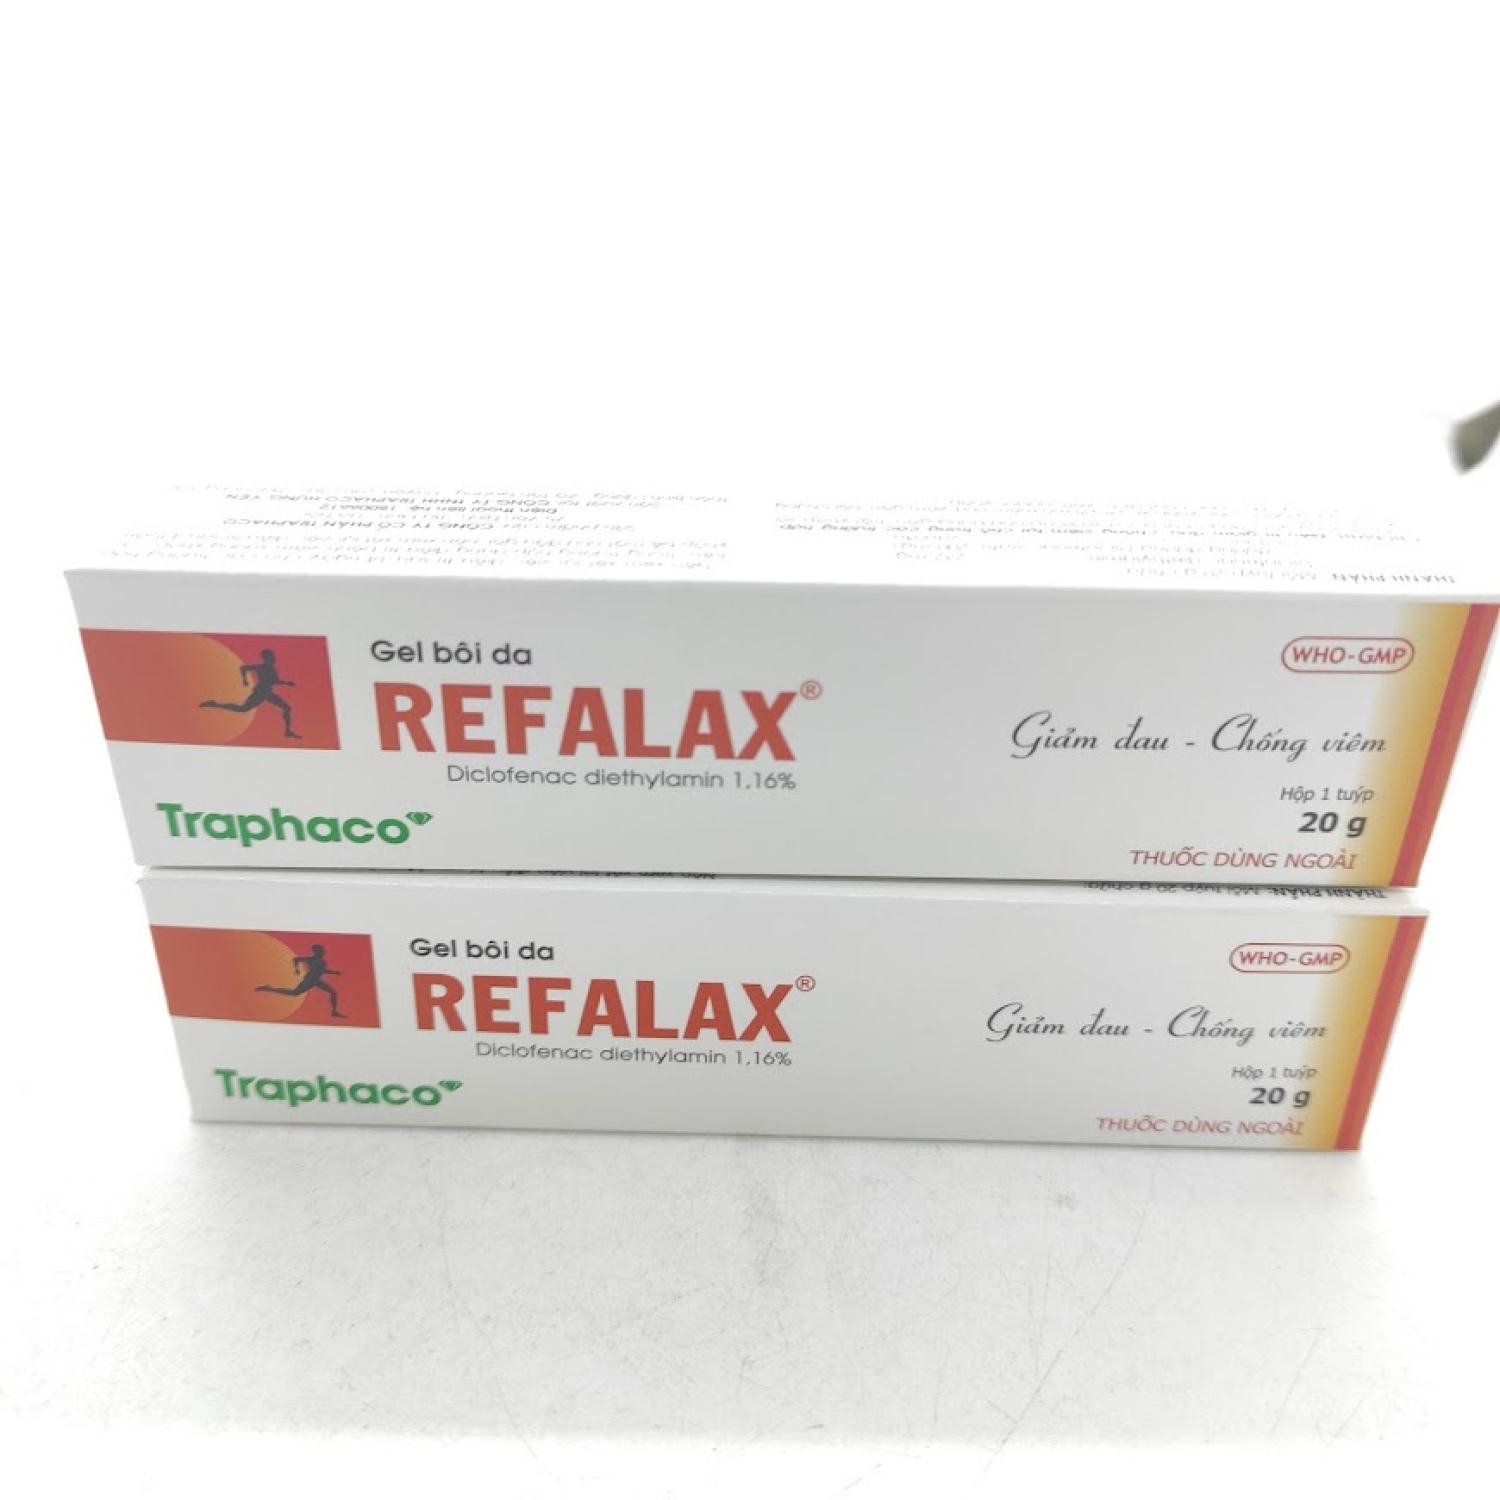 el Bôi Da Refalax giảm đau chống viêmTuýp 20g - Traphaco